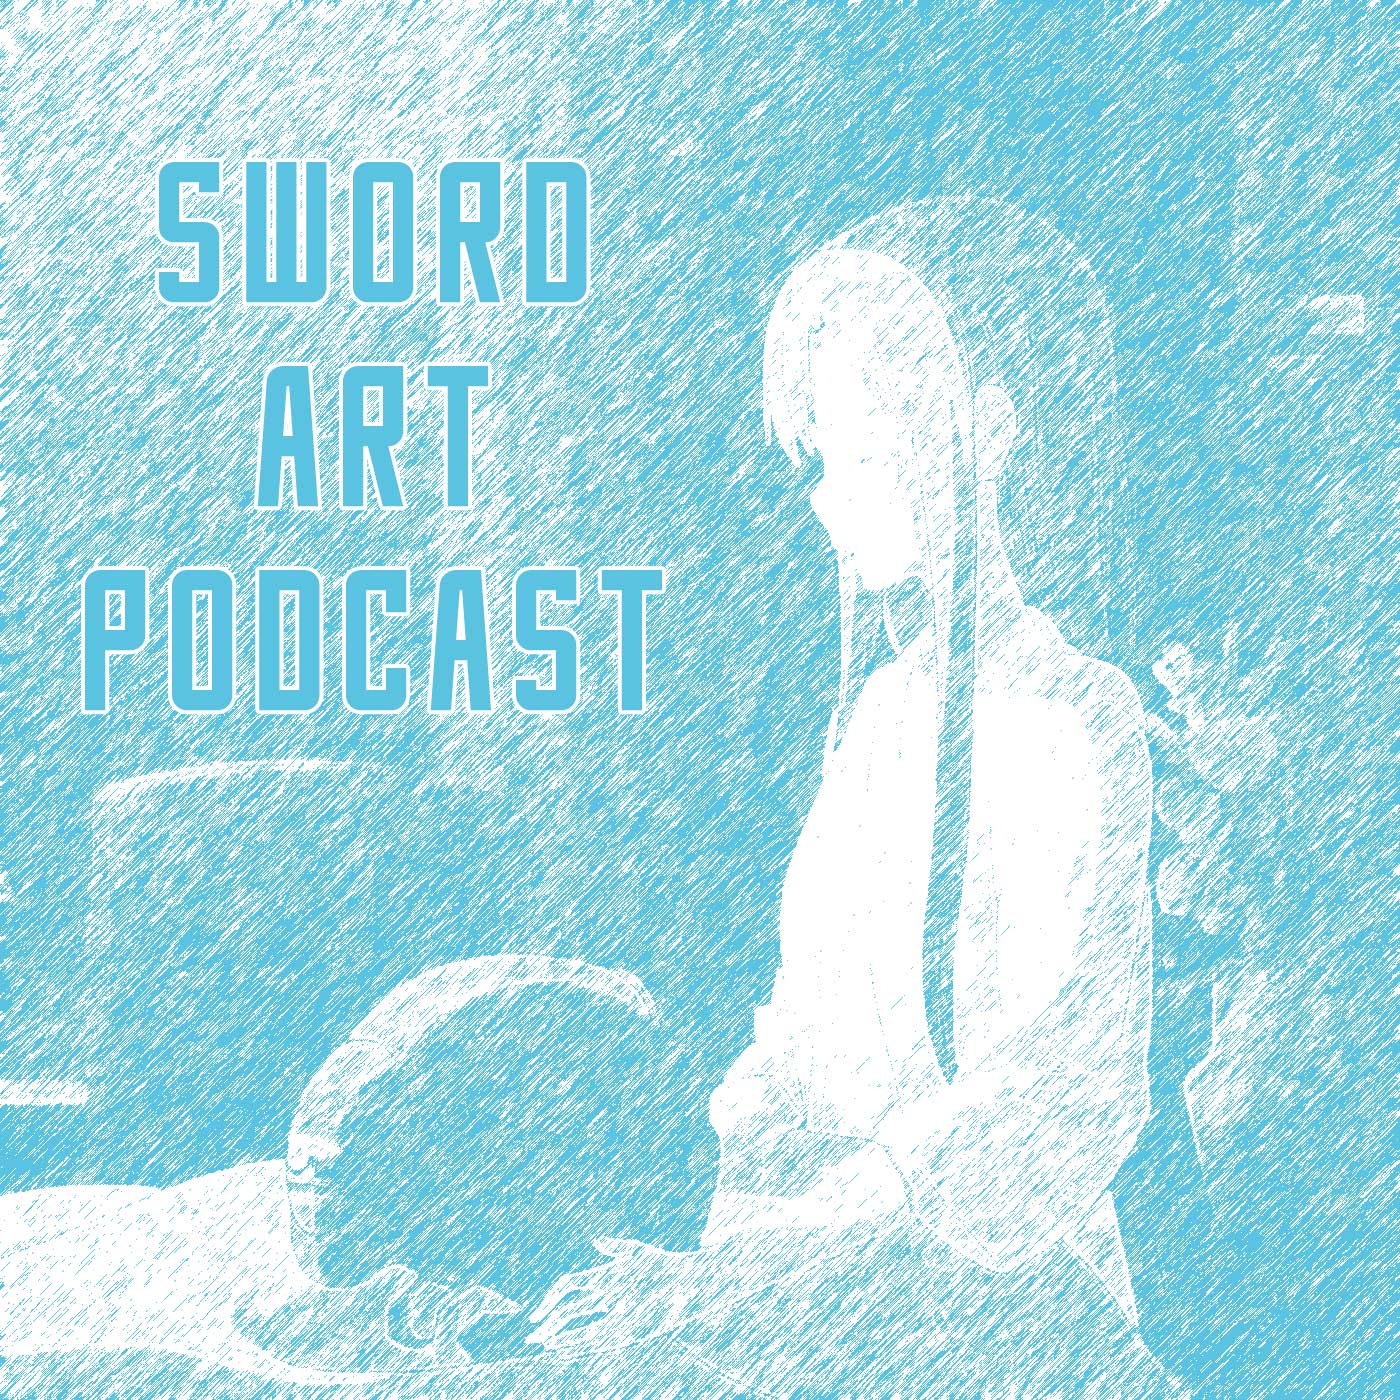 Sword Art Podcast - Season 4 - Epsiode 4